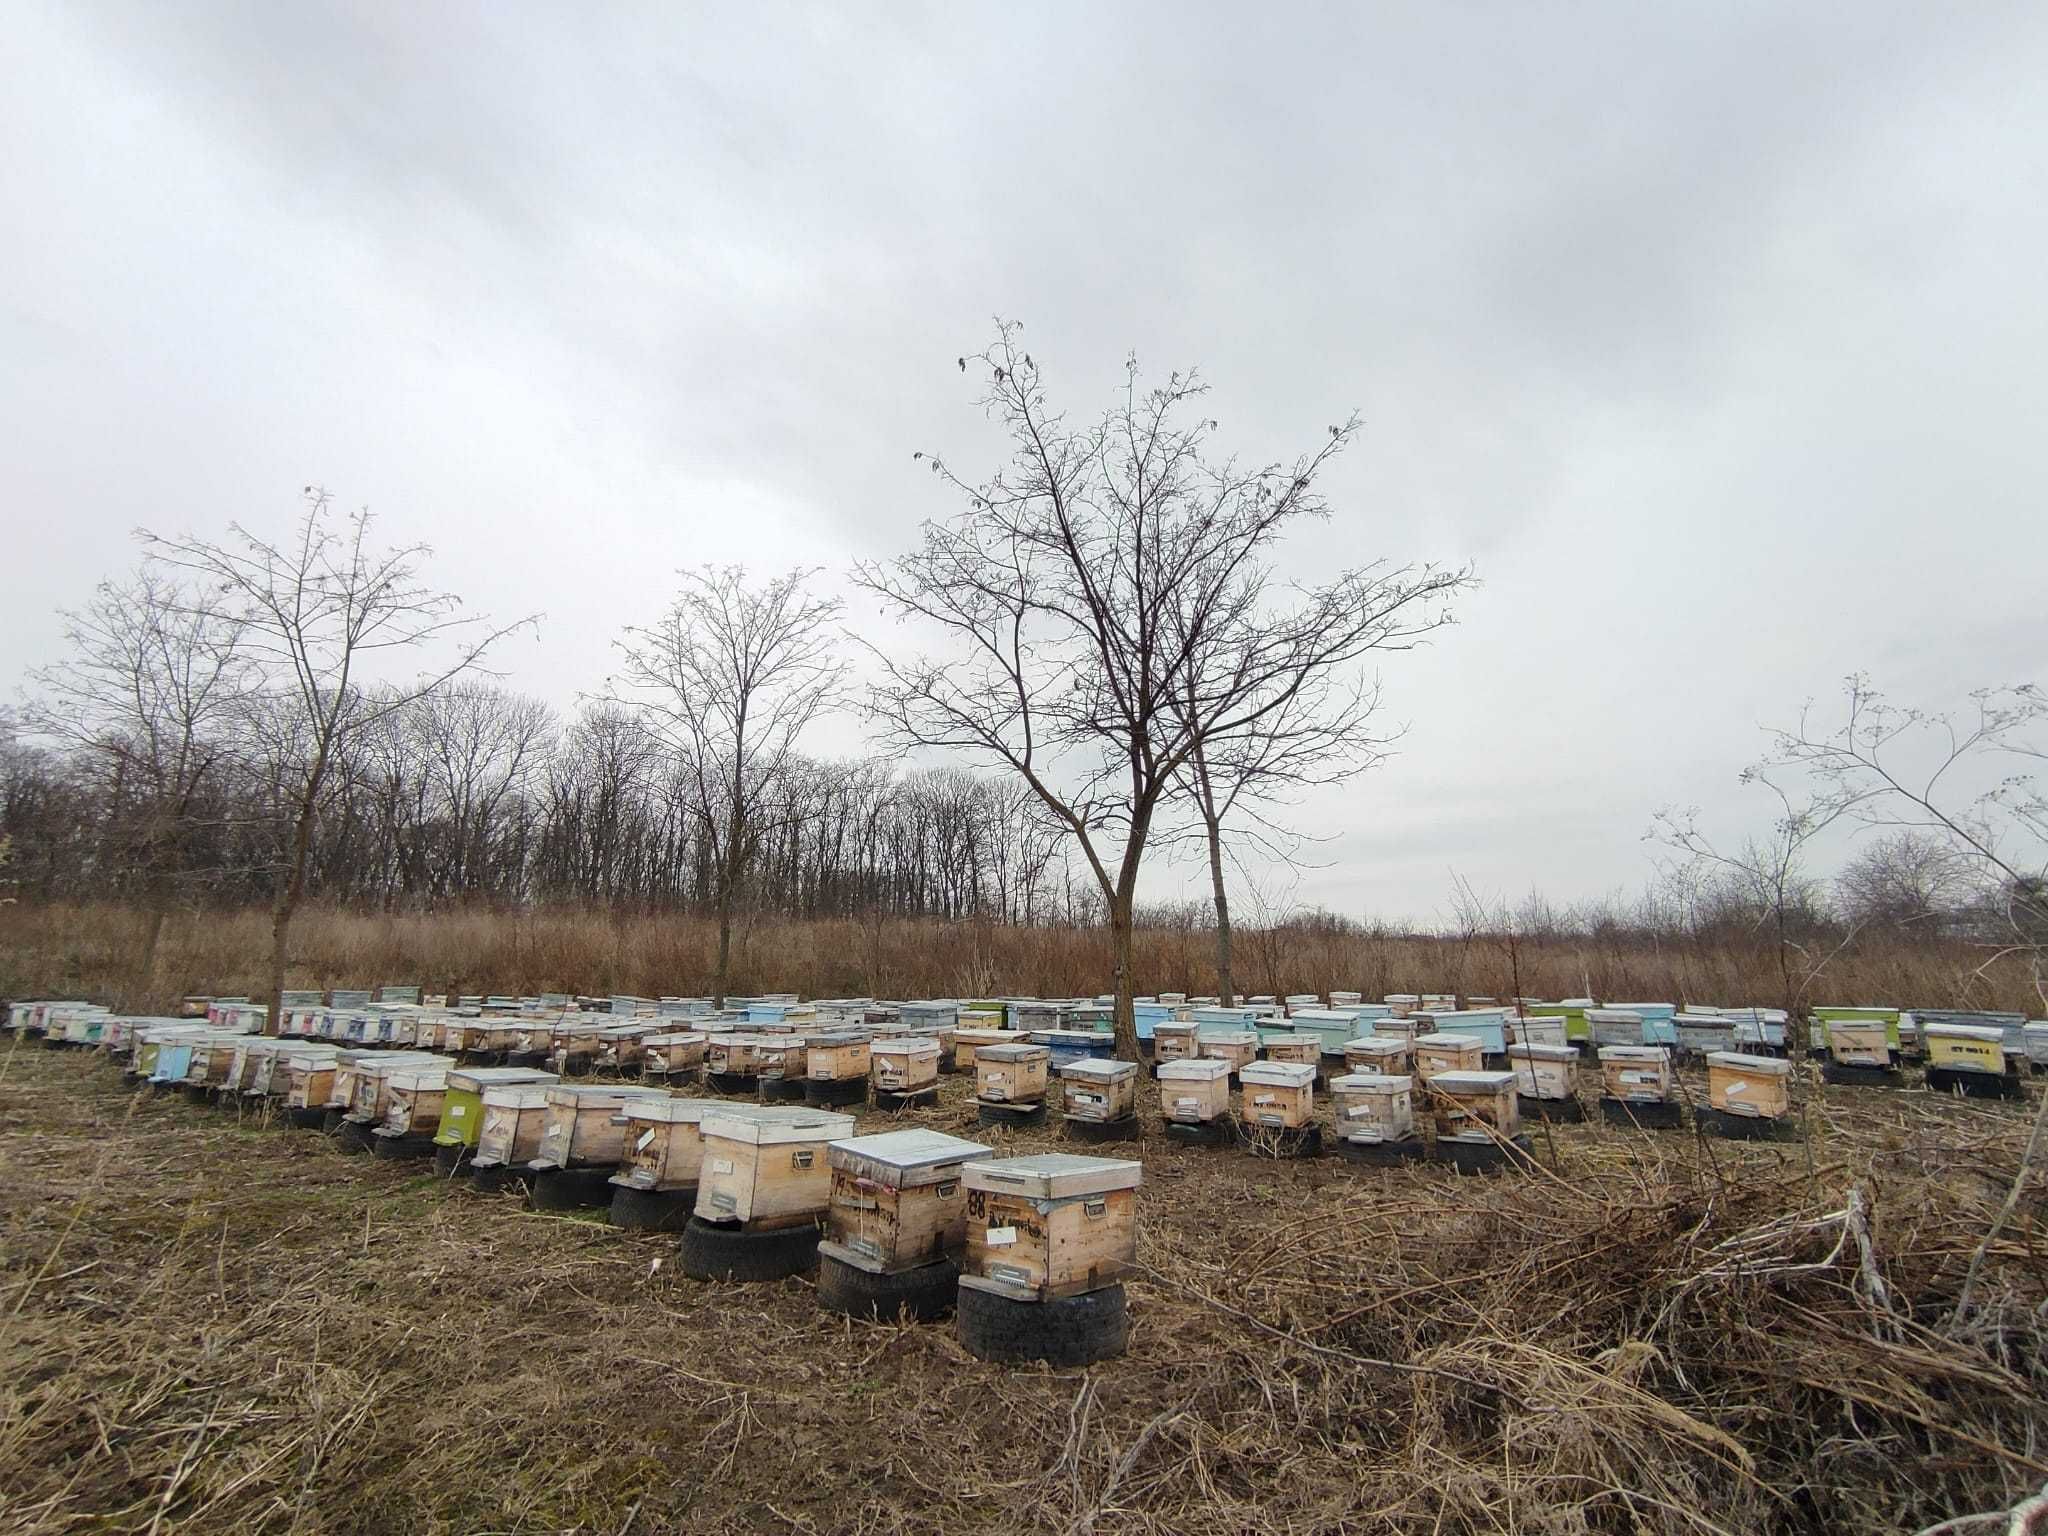 Vând 100 familii de albine